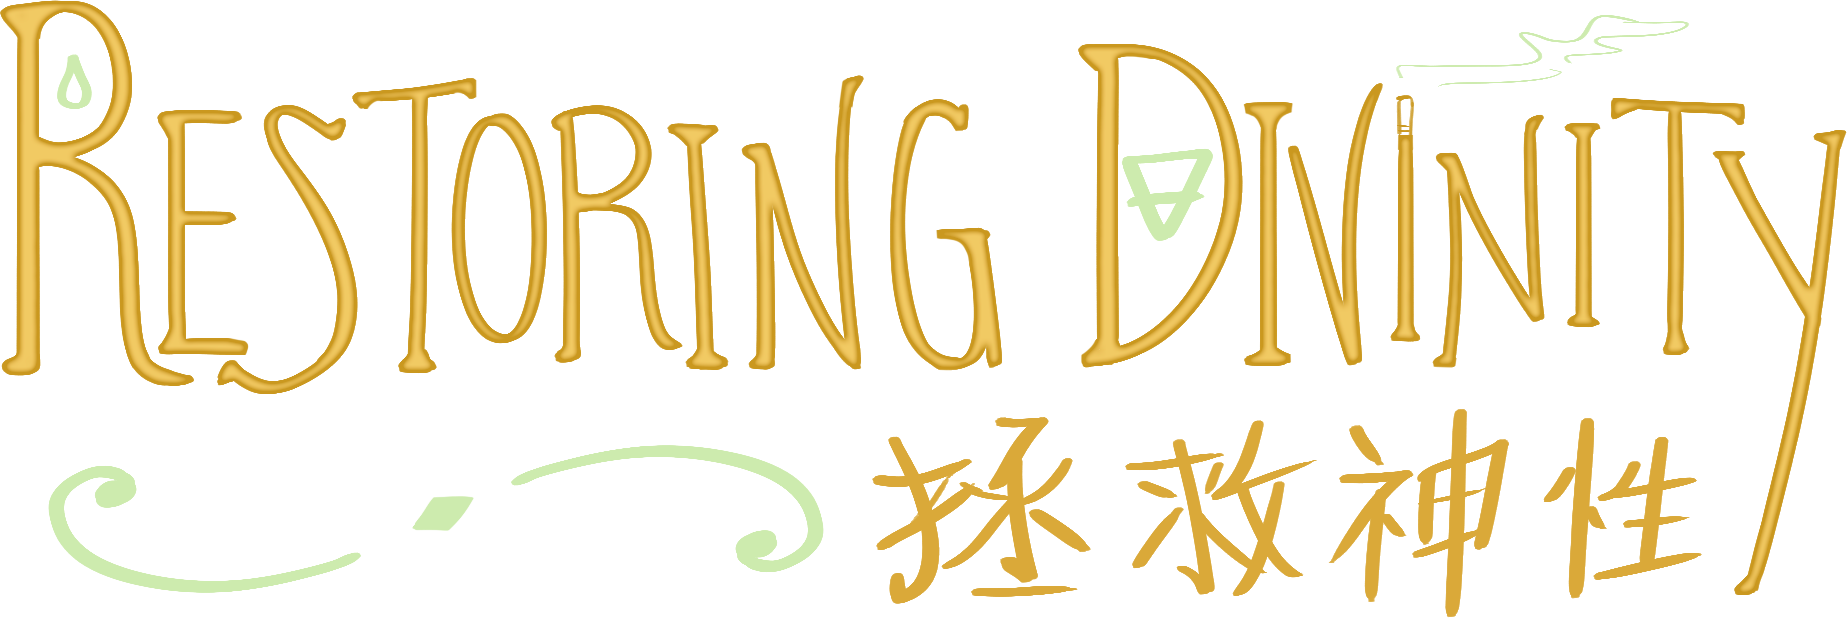 rd-logo.png